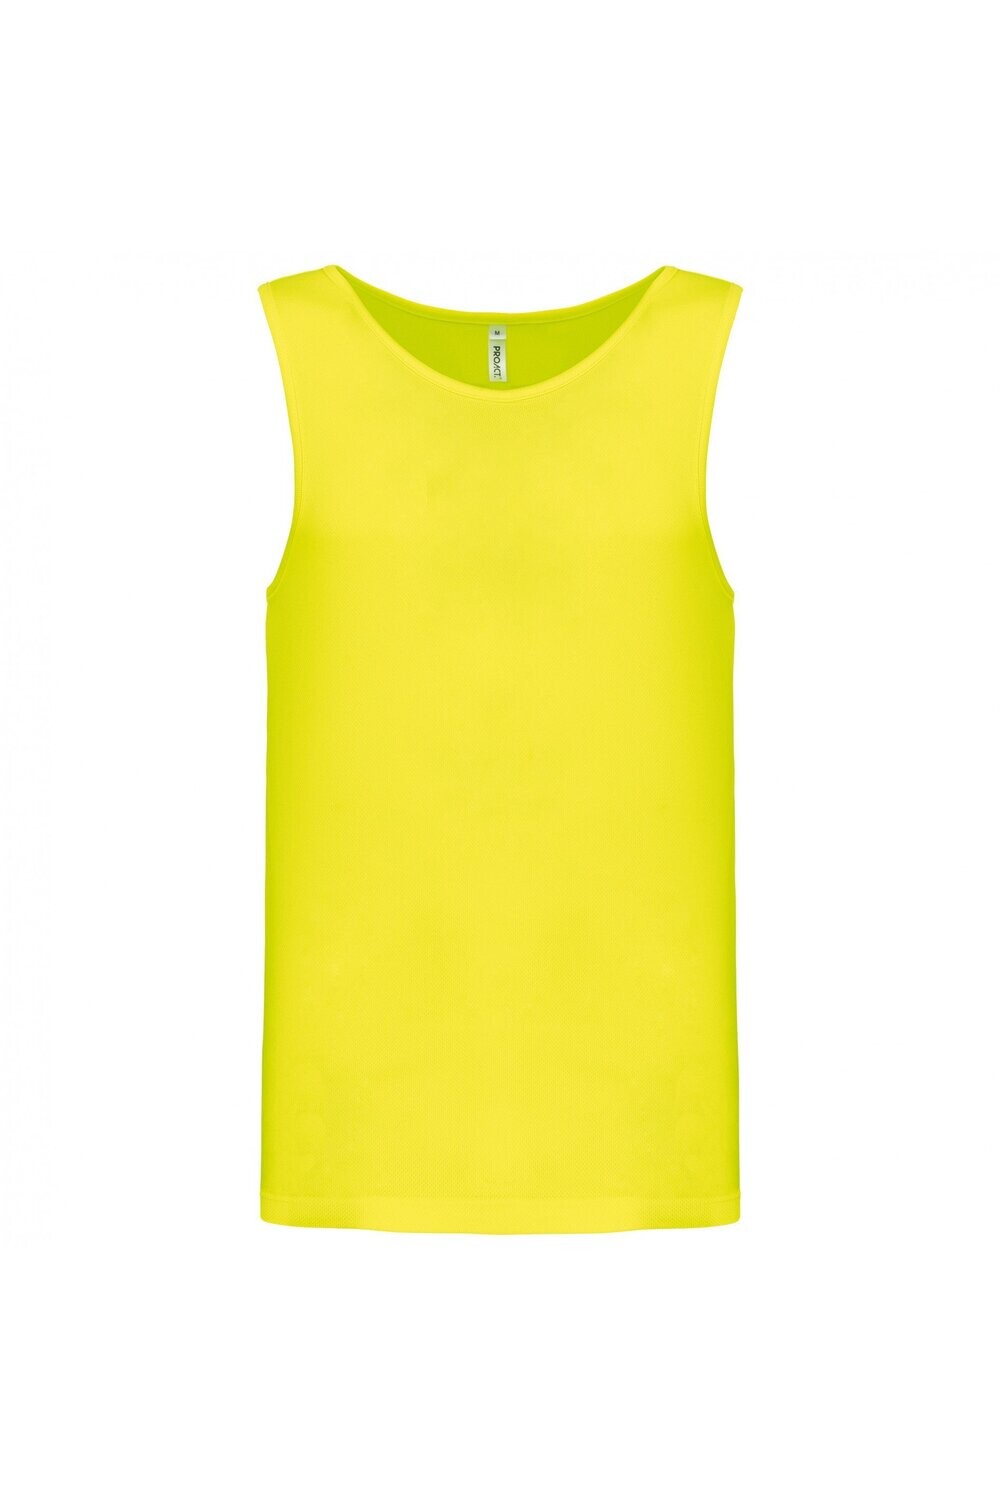 Herren Basic Sport Funktionsshirt ärmellos Fluorescent Yellow